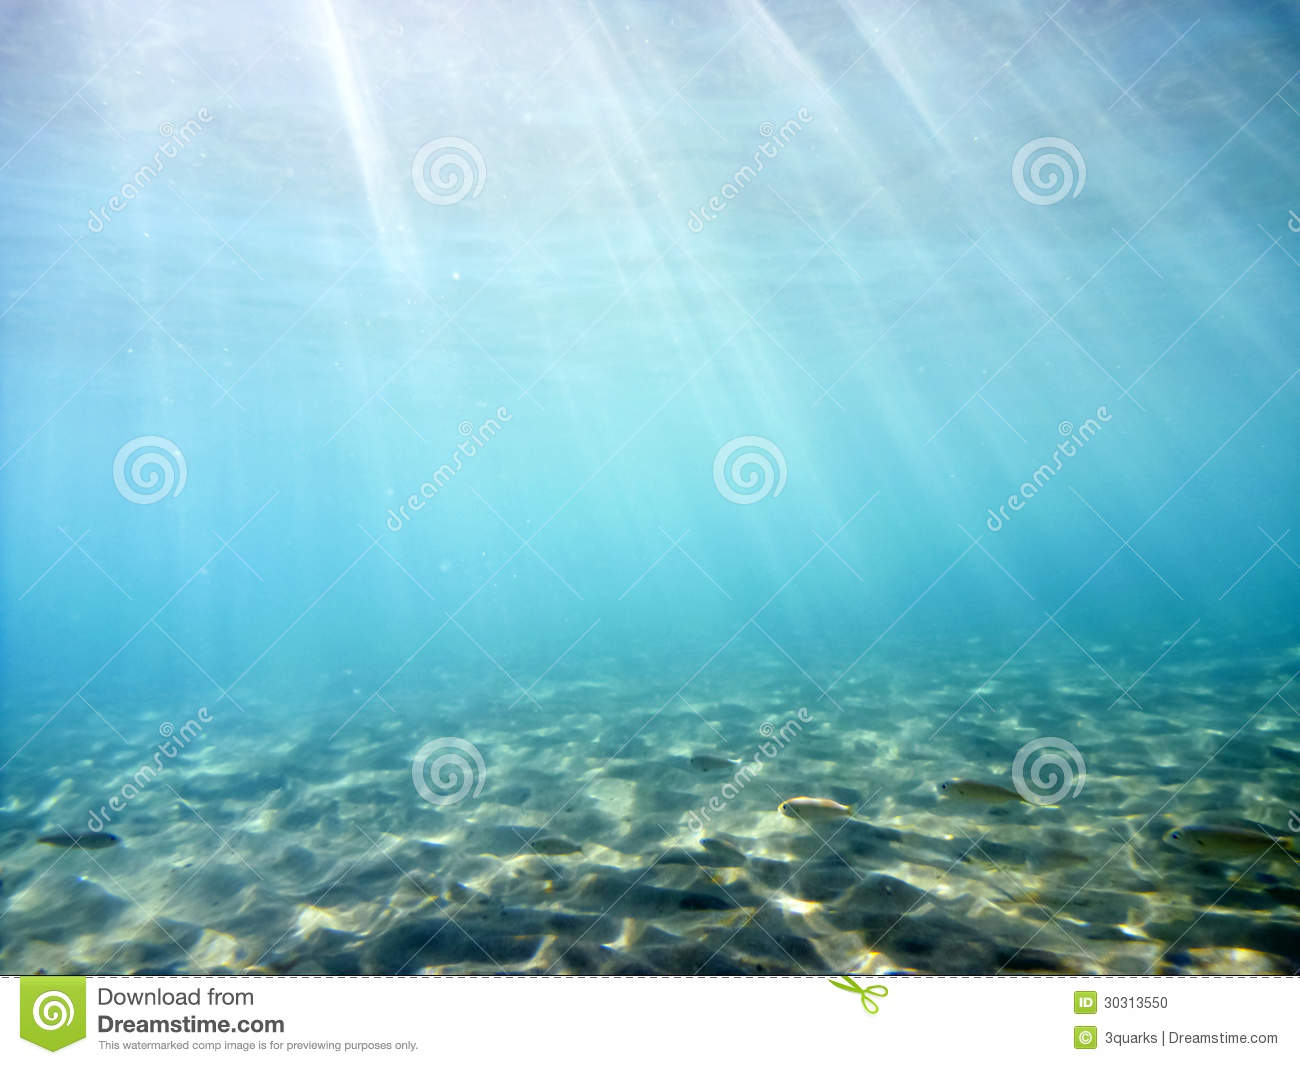 Underwater Ocean Scenes